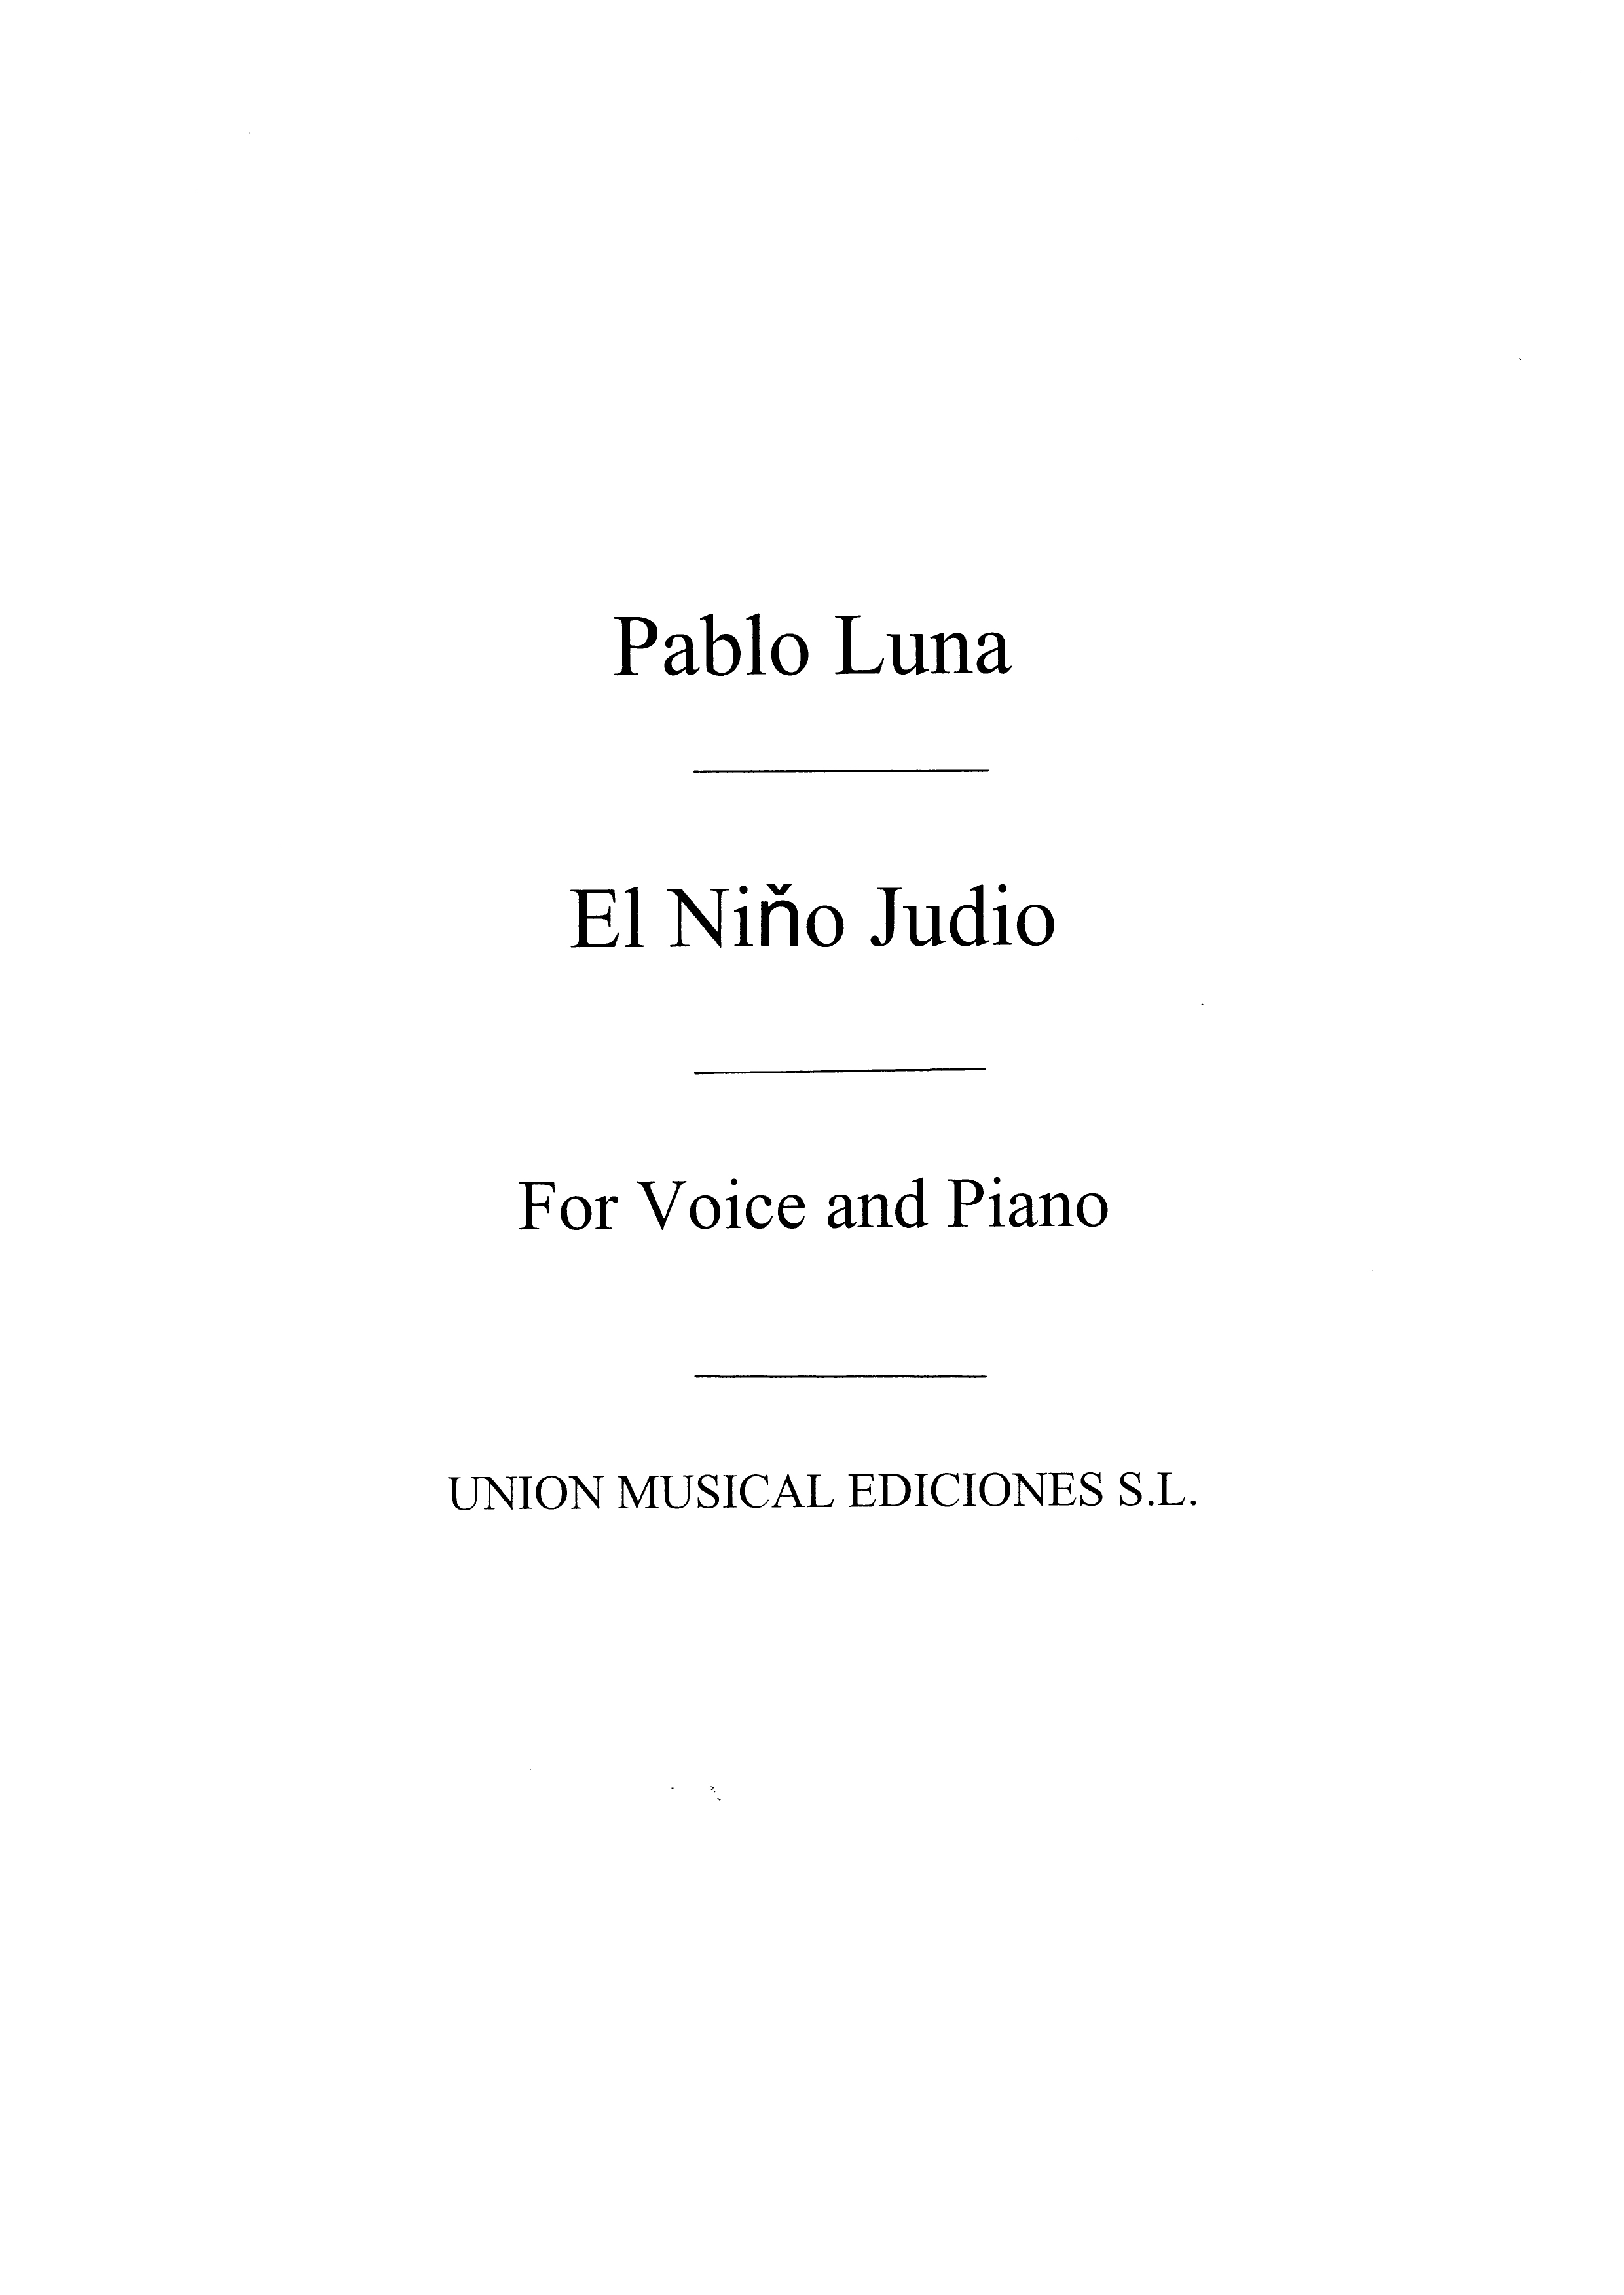 Pablo Luna: El Nino Judio No.7 - Voice/Piano